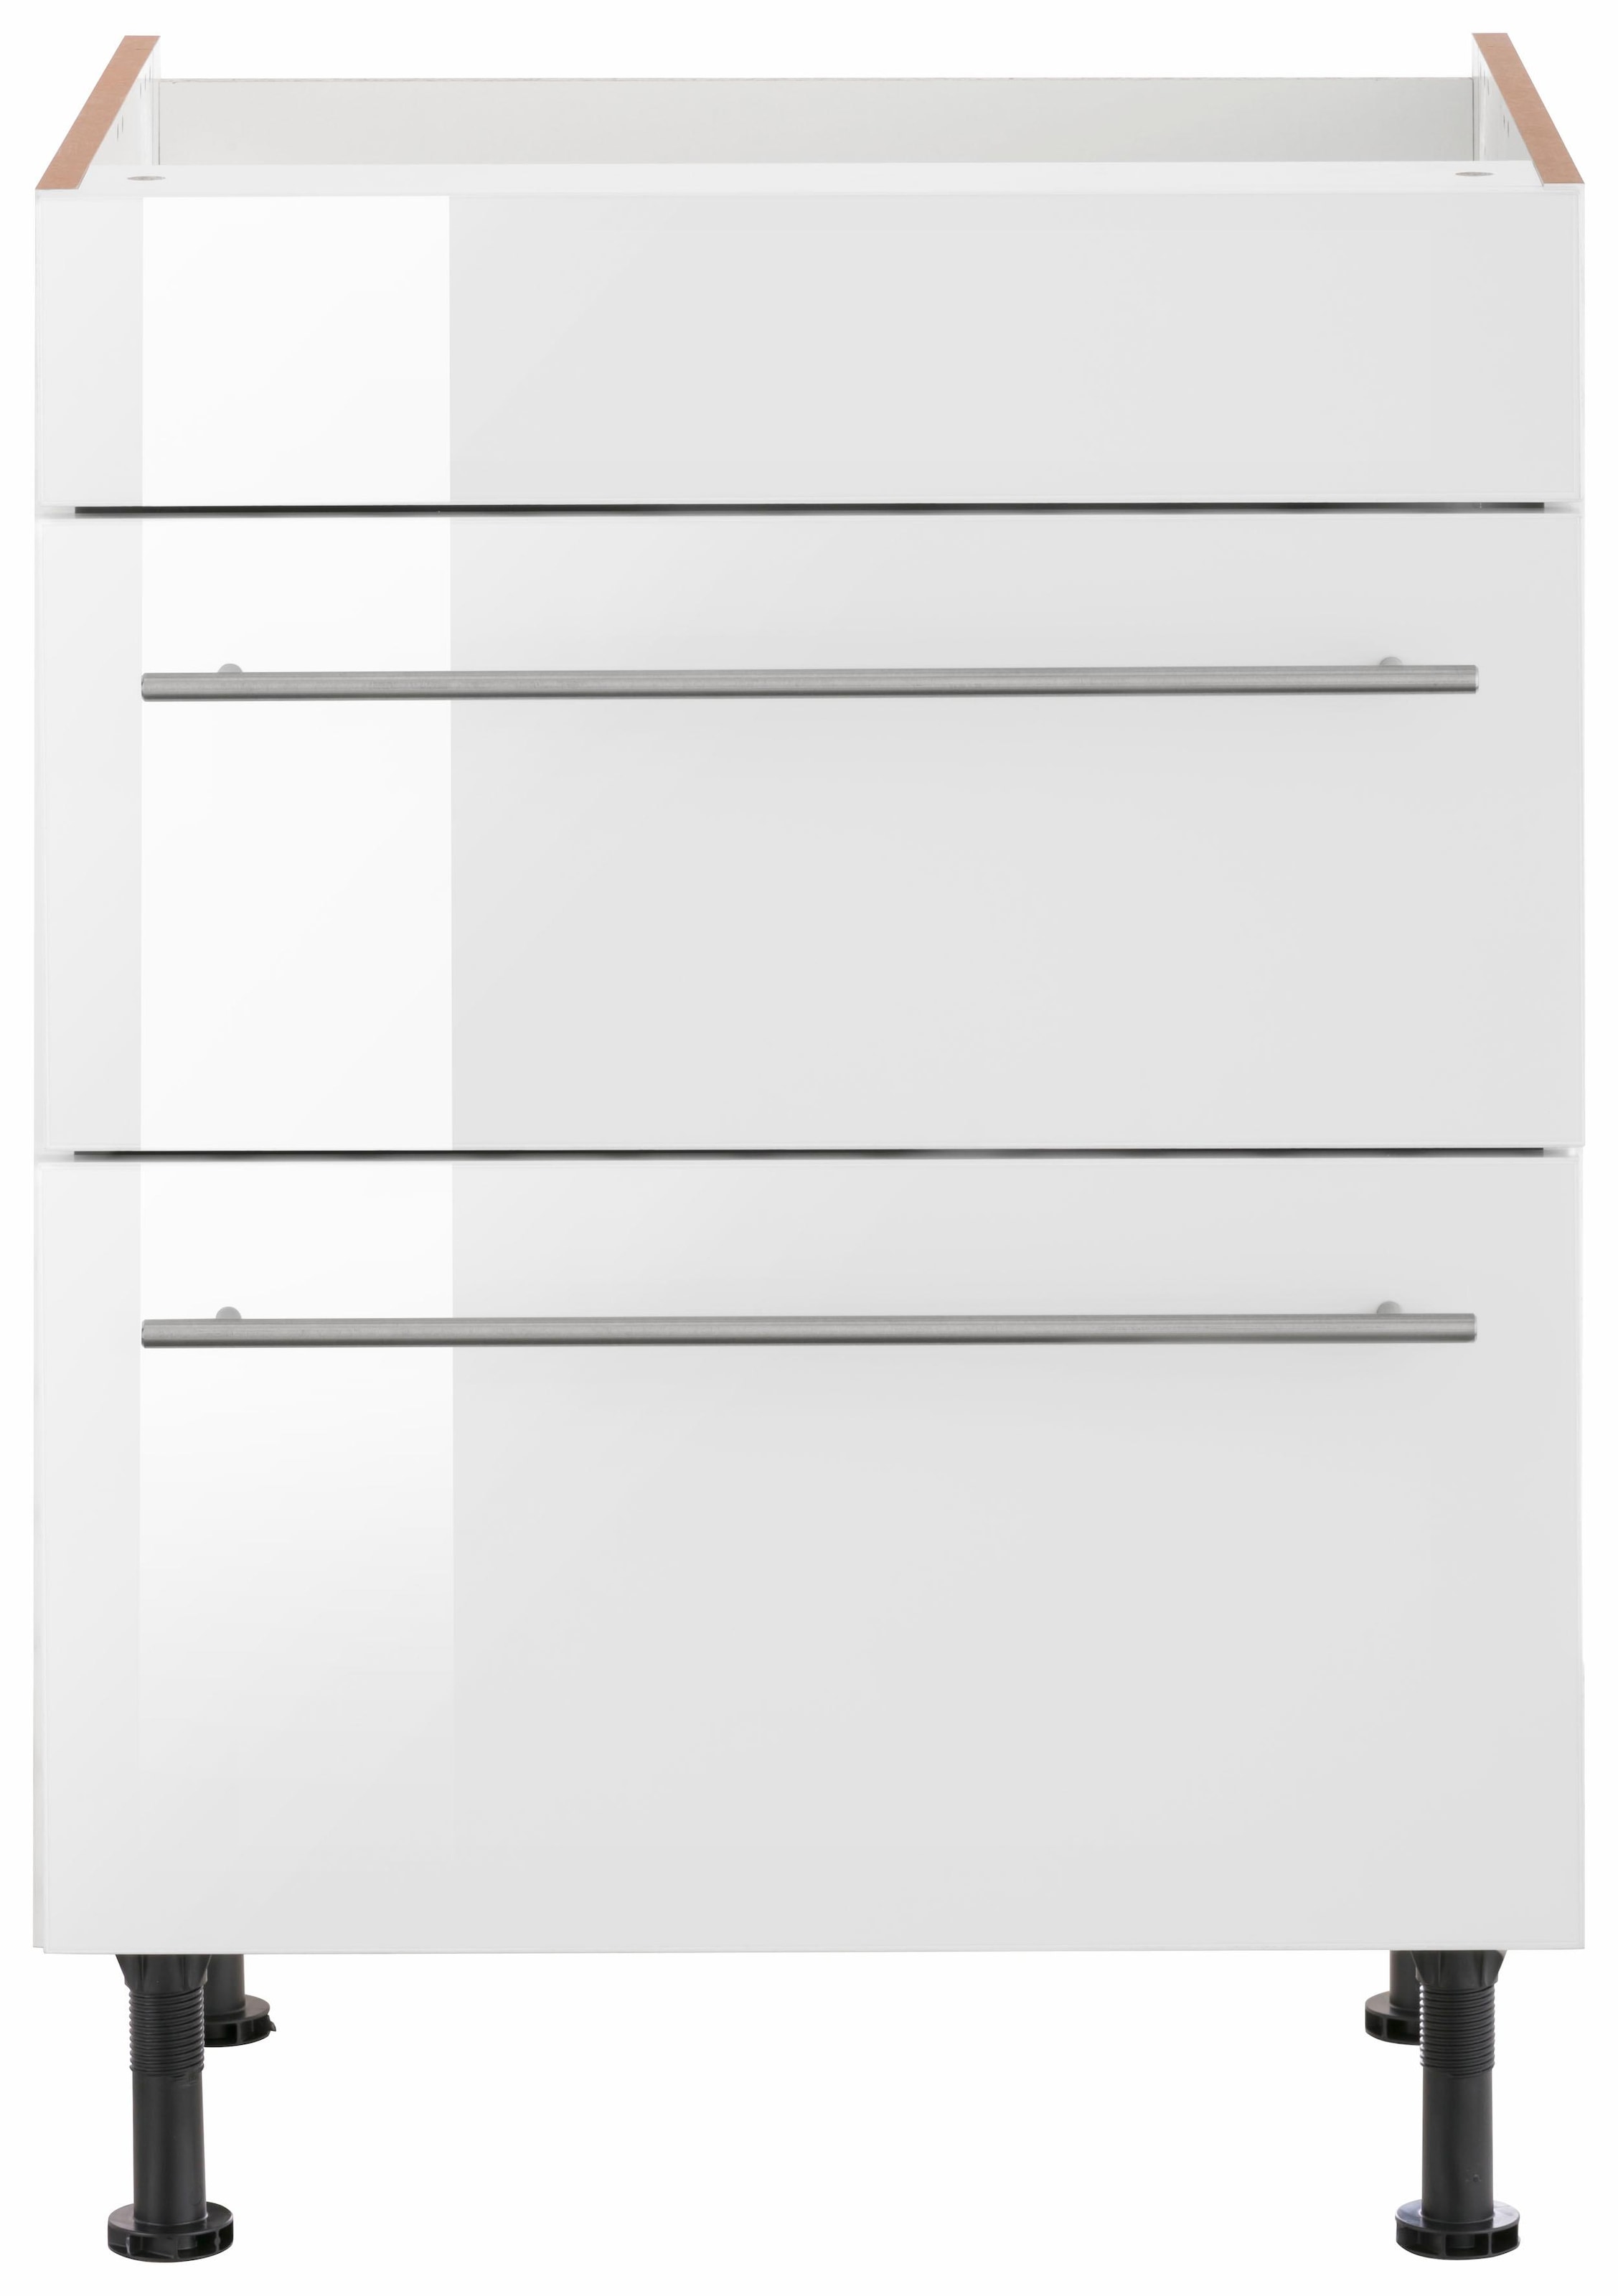 OPTIFIT Kochfeldumbauschrank »Bern«, 60 cm breit, mit 2 Auszügen, mit höhenverstellbare Füsse